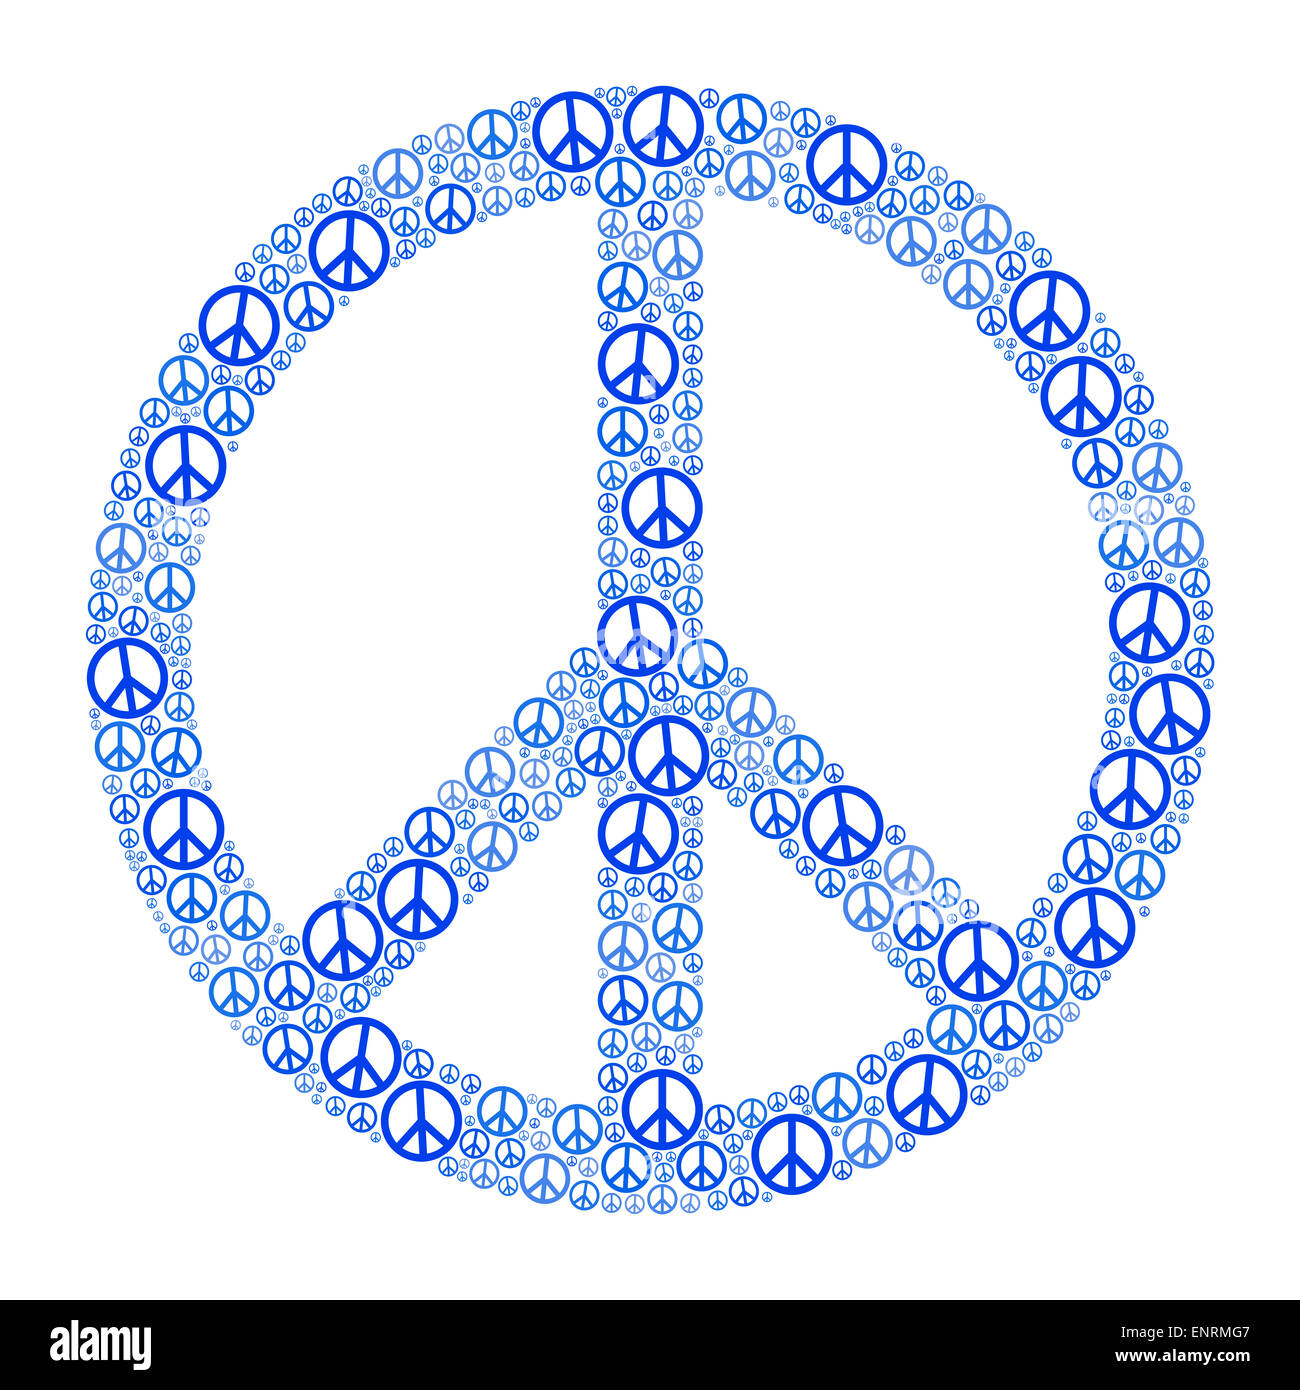 Signo de paz azul formado por muchos pequeños símbolos de paz. Ilustración sobre fondo blanco. Foto de stock